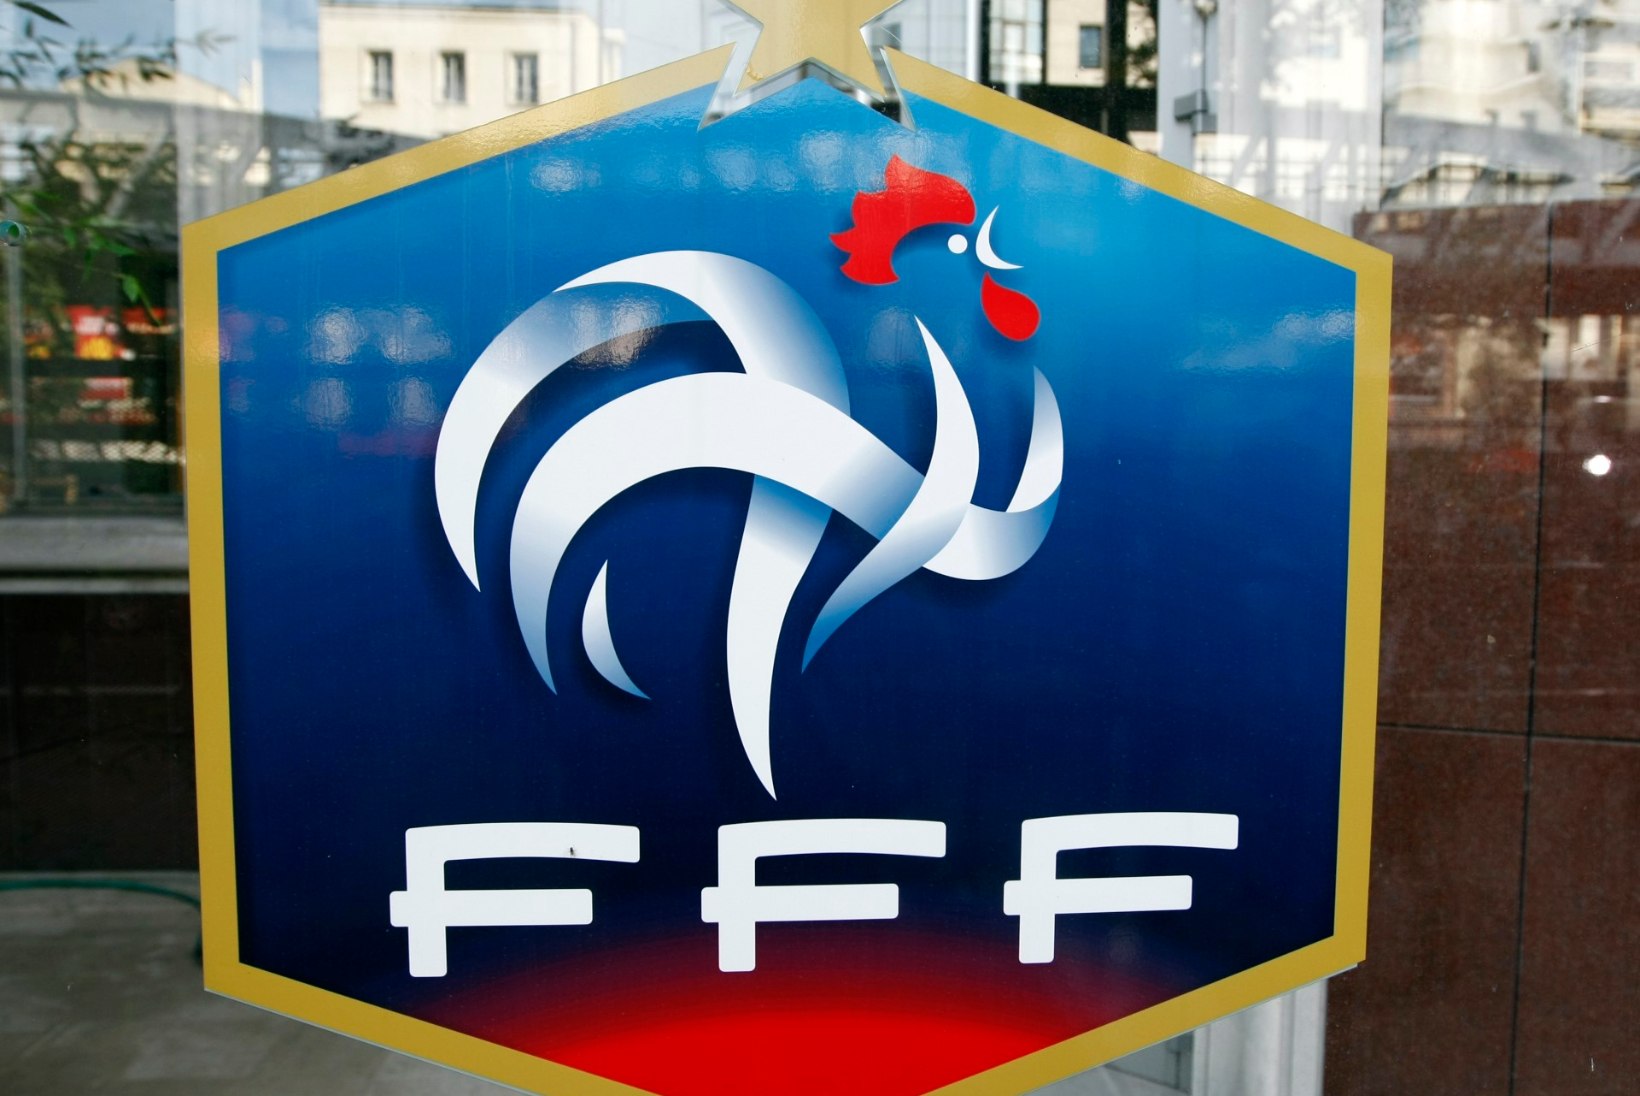 Blatteri süüasjas otsiti läbi Prantsusmaa jalgpalliliidu kontor